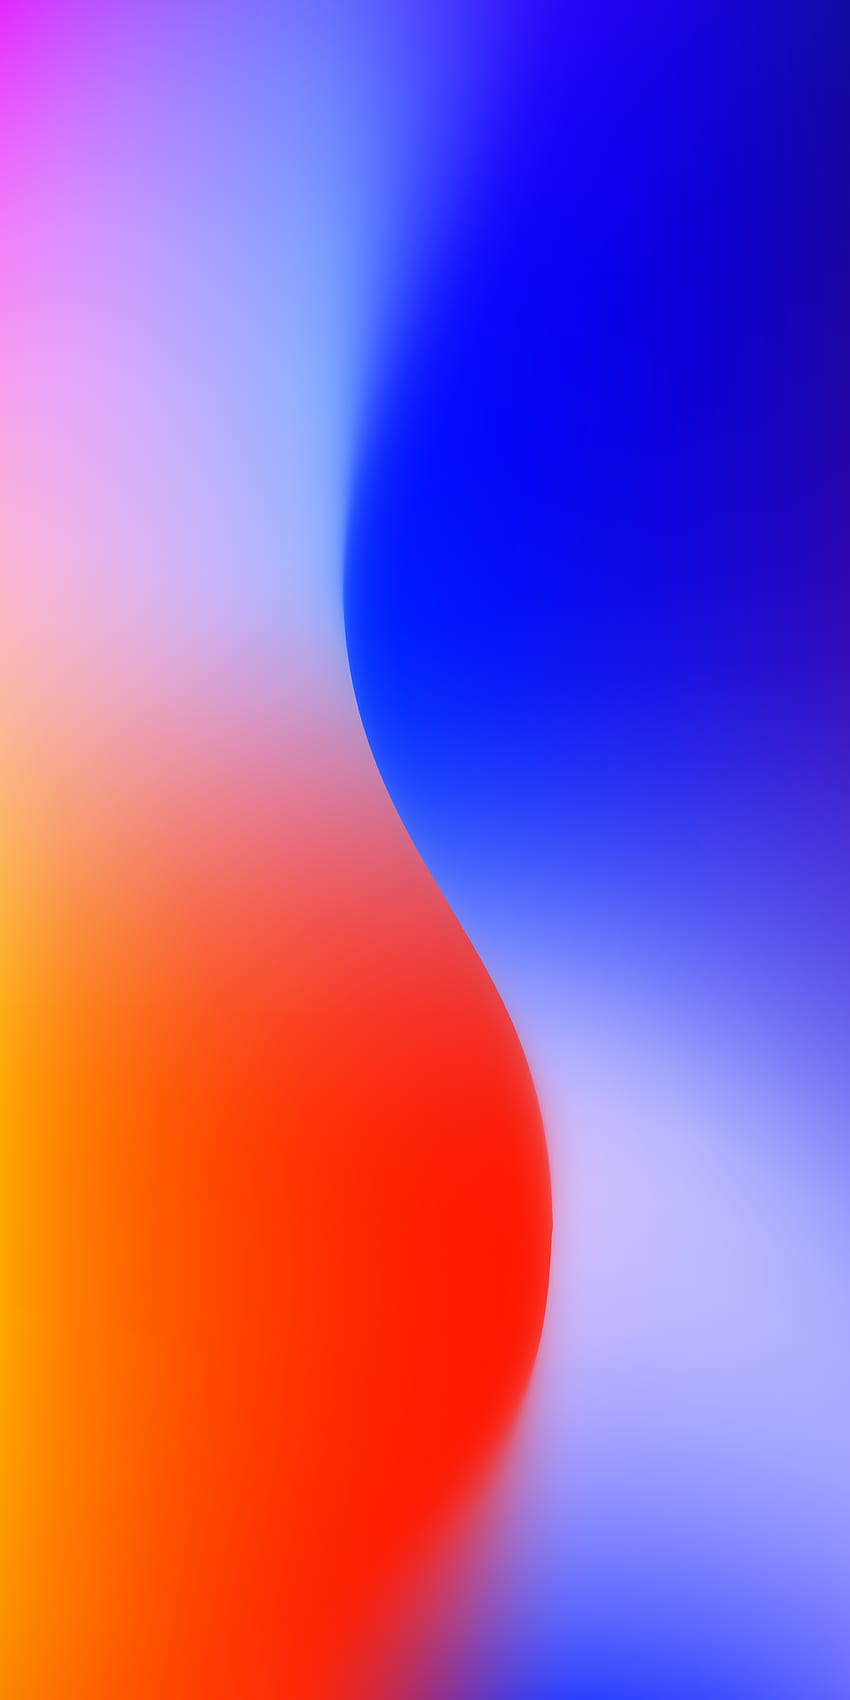 sfumatura arancione e blu S. Schermata iniziale iPhone, iPhone a colori, Q, telefono blu e arancione Sfondo del telefono HD